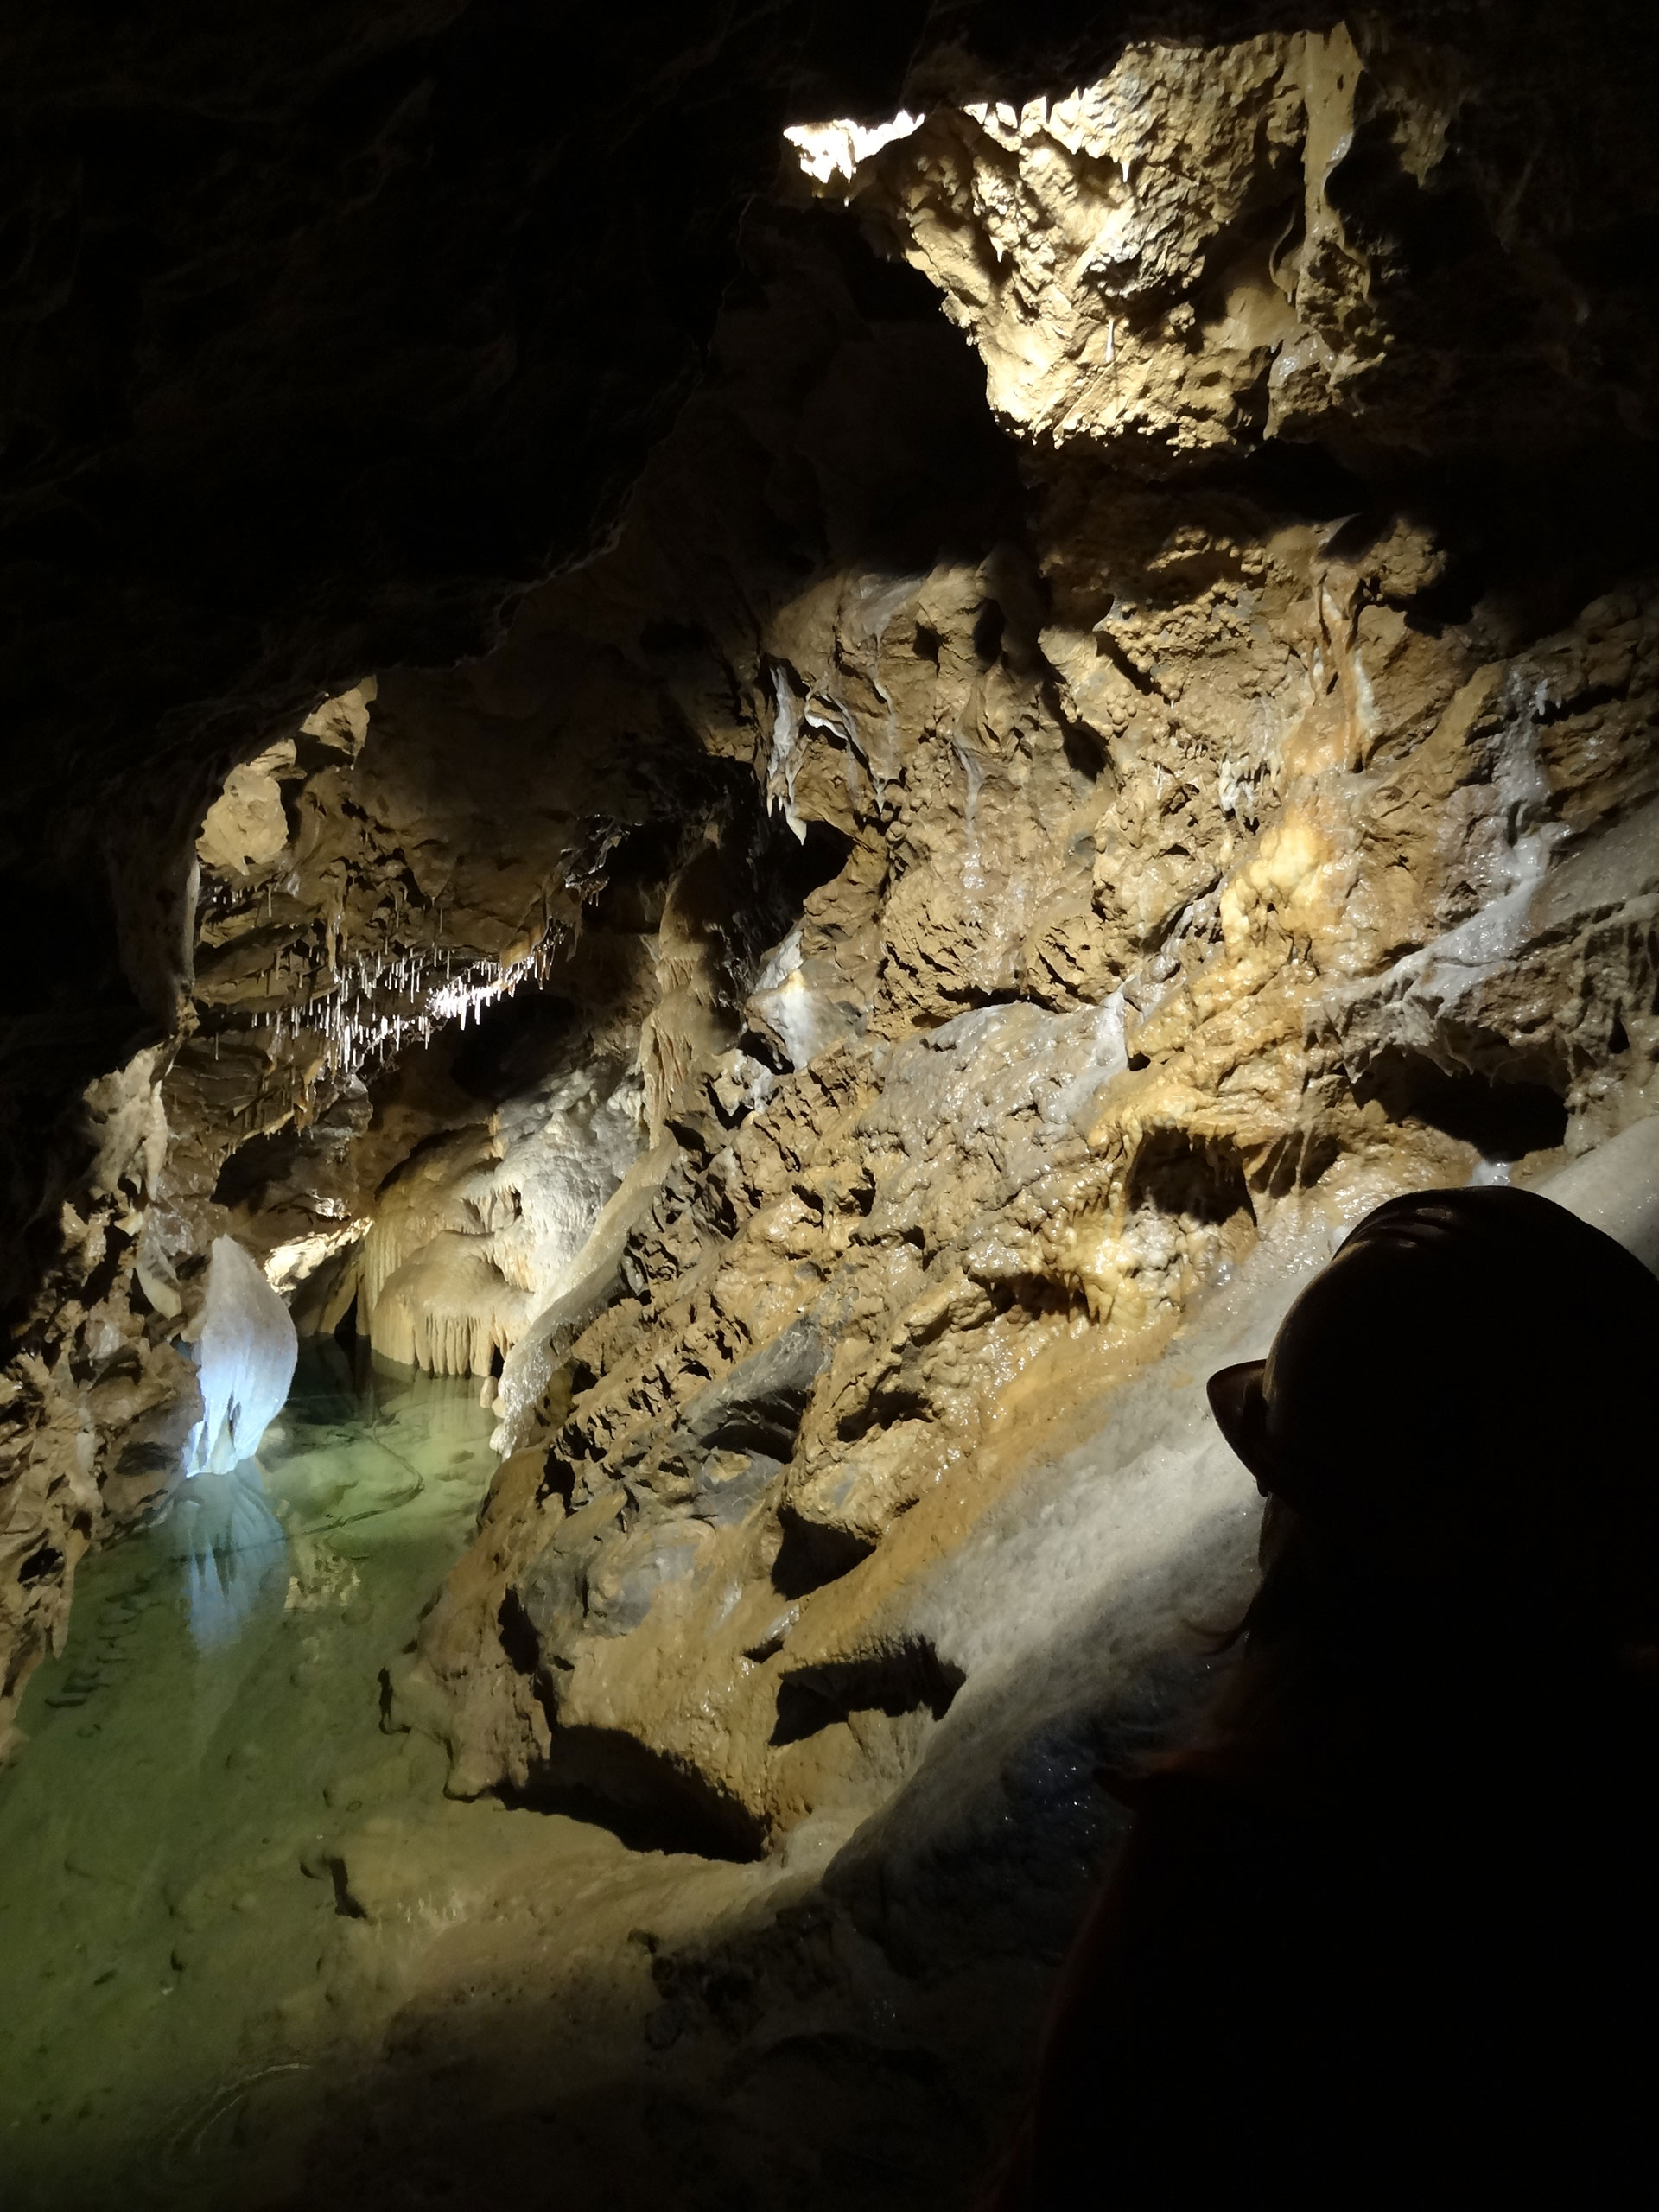 Discover the Grotte de Comblain in Comblain-au-Pont